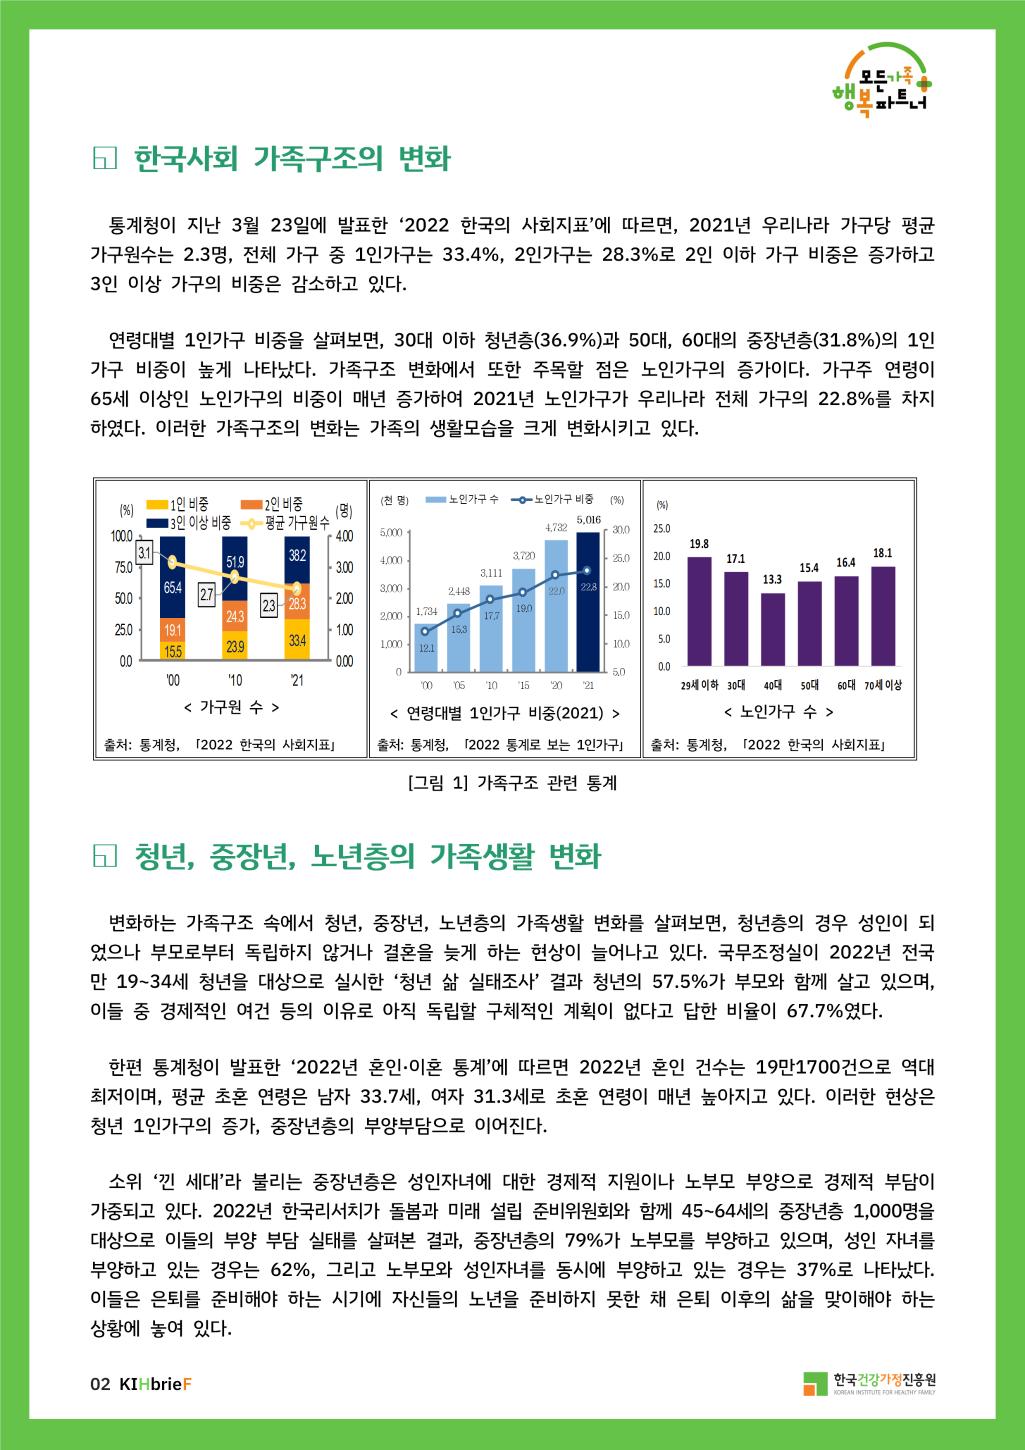 1 한국사회 가족구조의 변화
통계청이 지난 3월 23일에 발표한 '2022 한국의 사회지표'에 따르면, 2021년 우리나라 가구당 평균 가구원수는 2.3명, 전체 가구 중 1인가구는 33.4%, 2인가구는 28.3%로 2인 이하 가구 비중은 증가하고 3인 이상 가구의 비중은 감소하고 있다.
연령대별 1인가구 비중을 살펴보면, 30대 이하 청년층(36.9%)과 50대, 60대의 중장년층(31.8%)의 1인
가구 비중이 높게 나타났다. 가족구조 변화에서 또한 주목할 점은 노인가구의 증가이다. 가구주 연령이
65세 이상인 노인가구의 비중이 매년 증가하여 2021년 노인가구가 우리나라 전체 가구의 22.8%를 차지
하였다. 이러한 가족구조의 변화는 가족의 생활모습을 크게 변화시키고 있다.

[그림 1]가족구조 관련 통계 :
표 1 : 통계청 출처의 2022 한국의 사회지표 가구원 수 표. 00년도, 10년도, 21년도 해를 거듭할수록 1인가구 비중은 늘고 3인 이상 가구 비중과 평균 가구원수는 줄고있다.
표 2 : 통계청 출처의 2022 통계로 보는 1인가구 - 연령대별 1인가구 비중(2021) 표. 노인가구 수와 노인가구 비중이 해마다 늘고있다.
표 3 : 통계청 출처의 2022 한국의 사회자료 - 노인가구 수 표. 70세 이상의 가구수가 18.1%로 19.8%의 29세 이하 가구 수 다음으로 가장 많은 숫자이다.

청년, 중장년, 노년층의 가족생활 변화
변화하는 가족구조 속에서 청년, 중장년, 노년층의 가족생활 변화를 살펴보면, 청년층의 경우 성인이 되 었으나 부모로부터 독립하지 않거나 결혼을 늦게 하는 현상이 늘어나고 있다. 국무조정실이 2022년 전국 만 19~34세 청년을 대상으로 실시한 '청년 삶 실태조사' 결과 청년의 57.5%가 부모와 함께 살고 있으며, 이들 중 경제적인 여건 등의 이유로 아직 독립할 구체적인 계획이 없다고 답한 비율이 67.7%였다.
한편 통계청이 발표한 '2022년 혼인 이혼 통계'에 따르면 2022년 혼인 건수는 19만1700건으로 역대 최저이며, 평균 초혼 연령은 남자 33.7세, 여자 31.3세로 초혼 연령이 매년 높아지고 있다. 이러한 현상은 청년 1인가구의 증가, 중장년층의 부양부담으로 이어진다.
소위 '낀 세대'라 불리는 중장년층은 성인자녀에 대한 경제적 지원이나 노부모 부양으로 경제적 부담이 가중되고 있다. 2022년 한국리서치가 돌봄과 미래 설립 준비위원회와 함께 45-64세의 중장년층 1,000명을 대상으로 이들의 부양 부담 실태를 살펴본 결과, 중장년층의 79%가 노부모를 부양하고 있으며, 성인 자녀를 부양하고 있는 경우는 62%, 그리고 노부모와 성인자녀를 동시에 부양하고 있는 경우는 37%로 나타났다. 이들은 은퇴를 준비해야 하는 시기에 자신들의 노년을 준비하지 못한 채 은퇴 이후의 삶을 맞이해야 하는 상황에 놓여 있다.